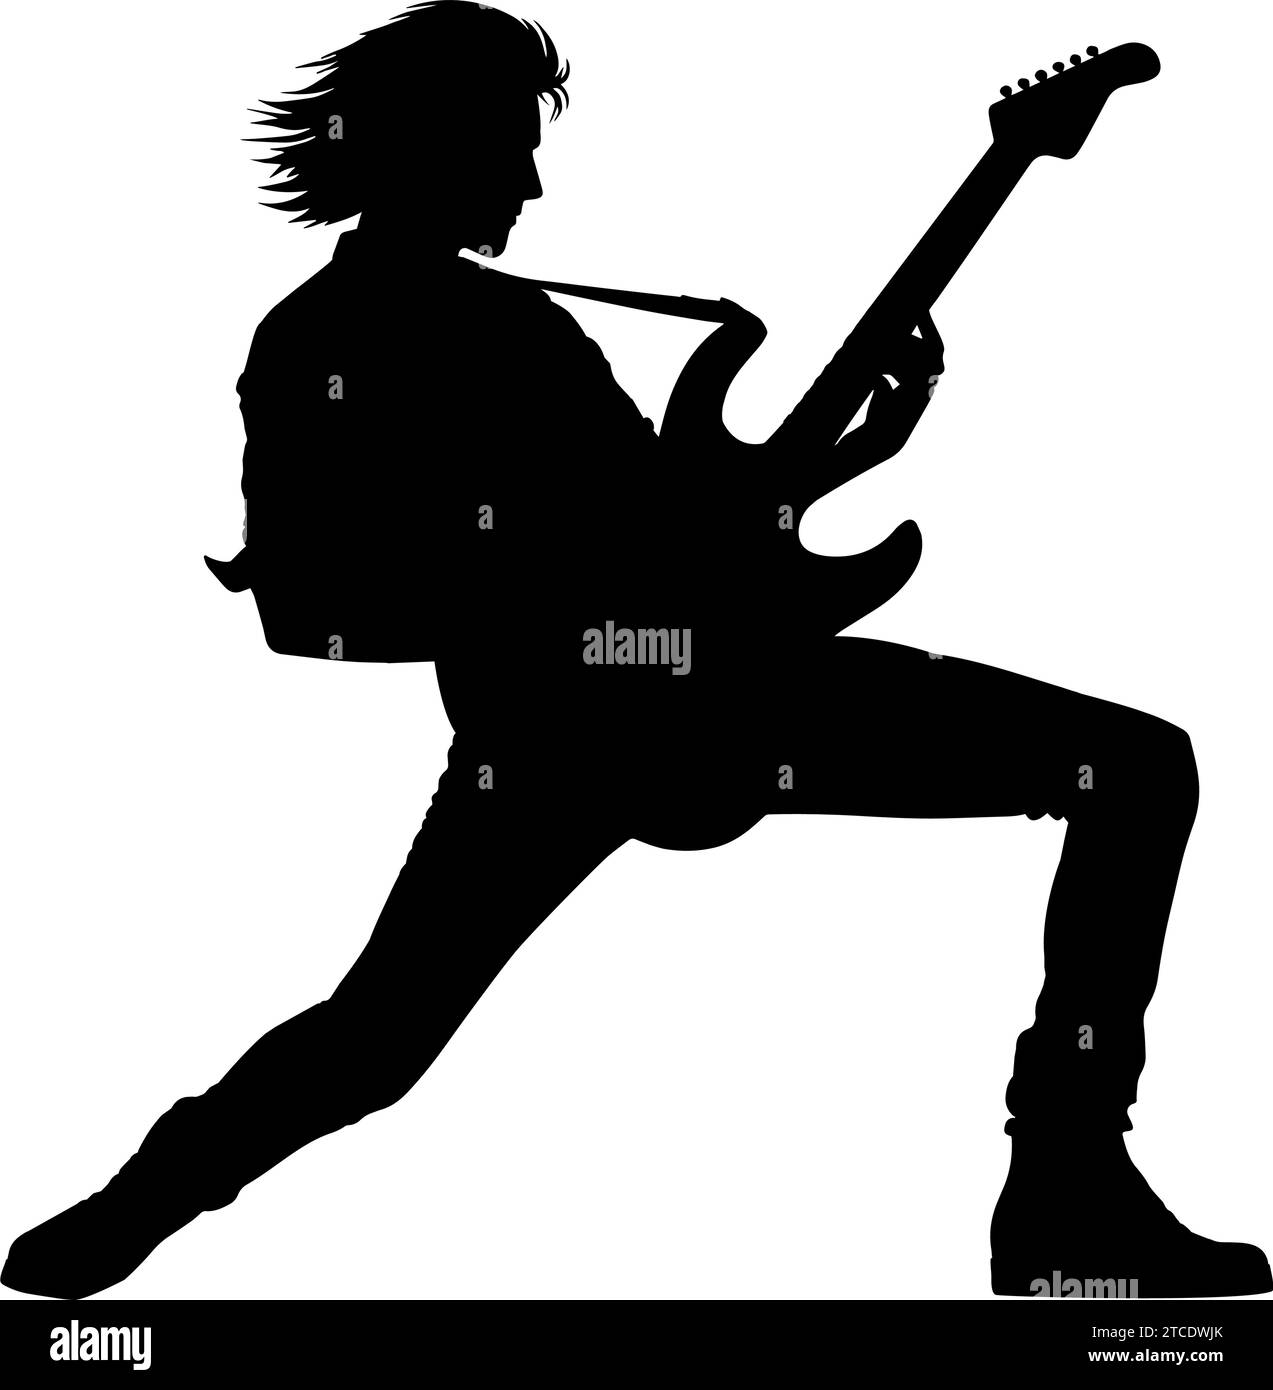 Silueta de un hombre tocando guitarra de rock. ilustración vectorial Ilustración del Vector